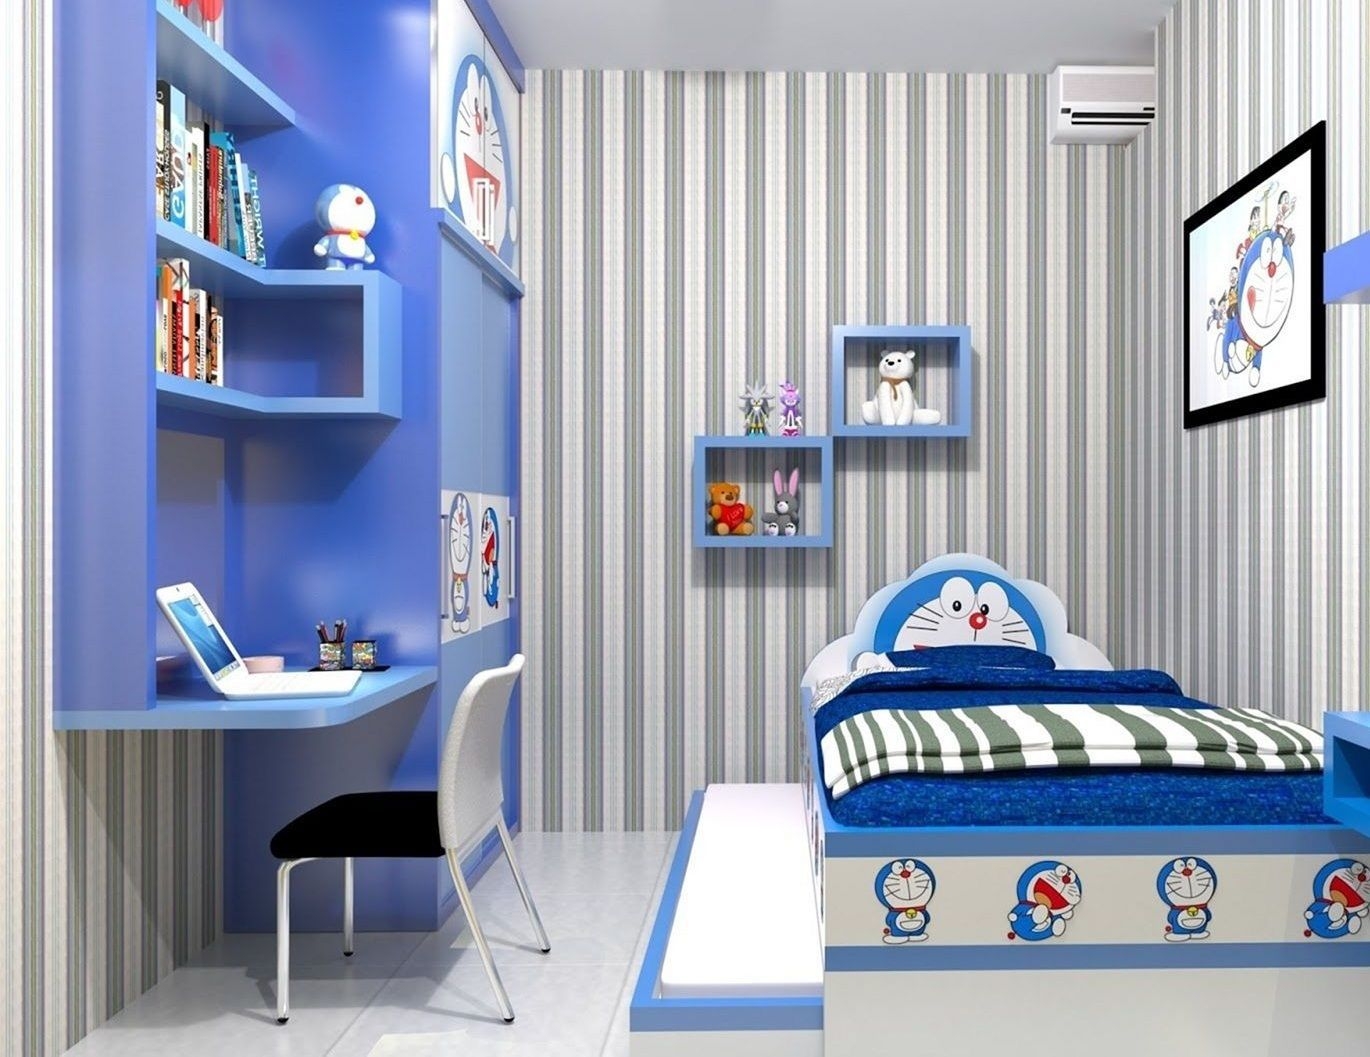 'Hoa cả mắt' với căn phòng 'xanh lè', tràn ngập tuổi thơ với chú mèo máy Doraemon - Ảnh 2